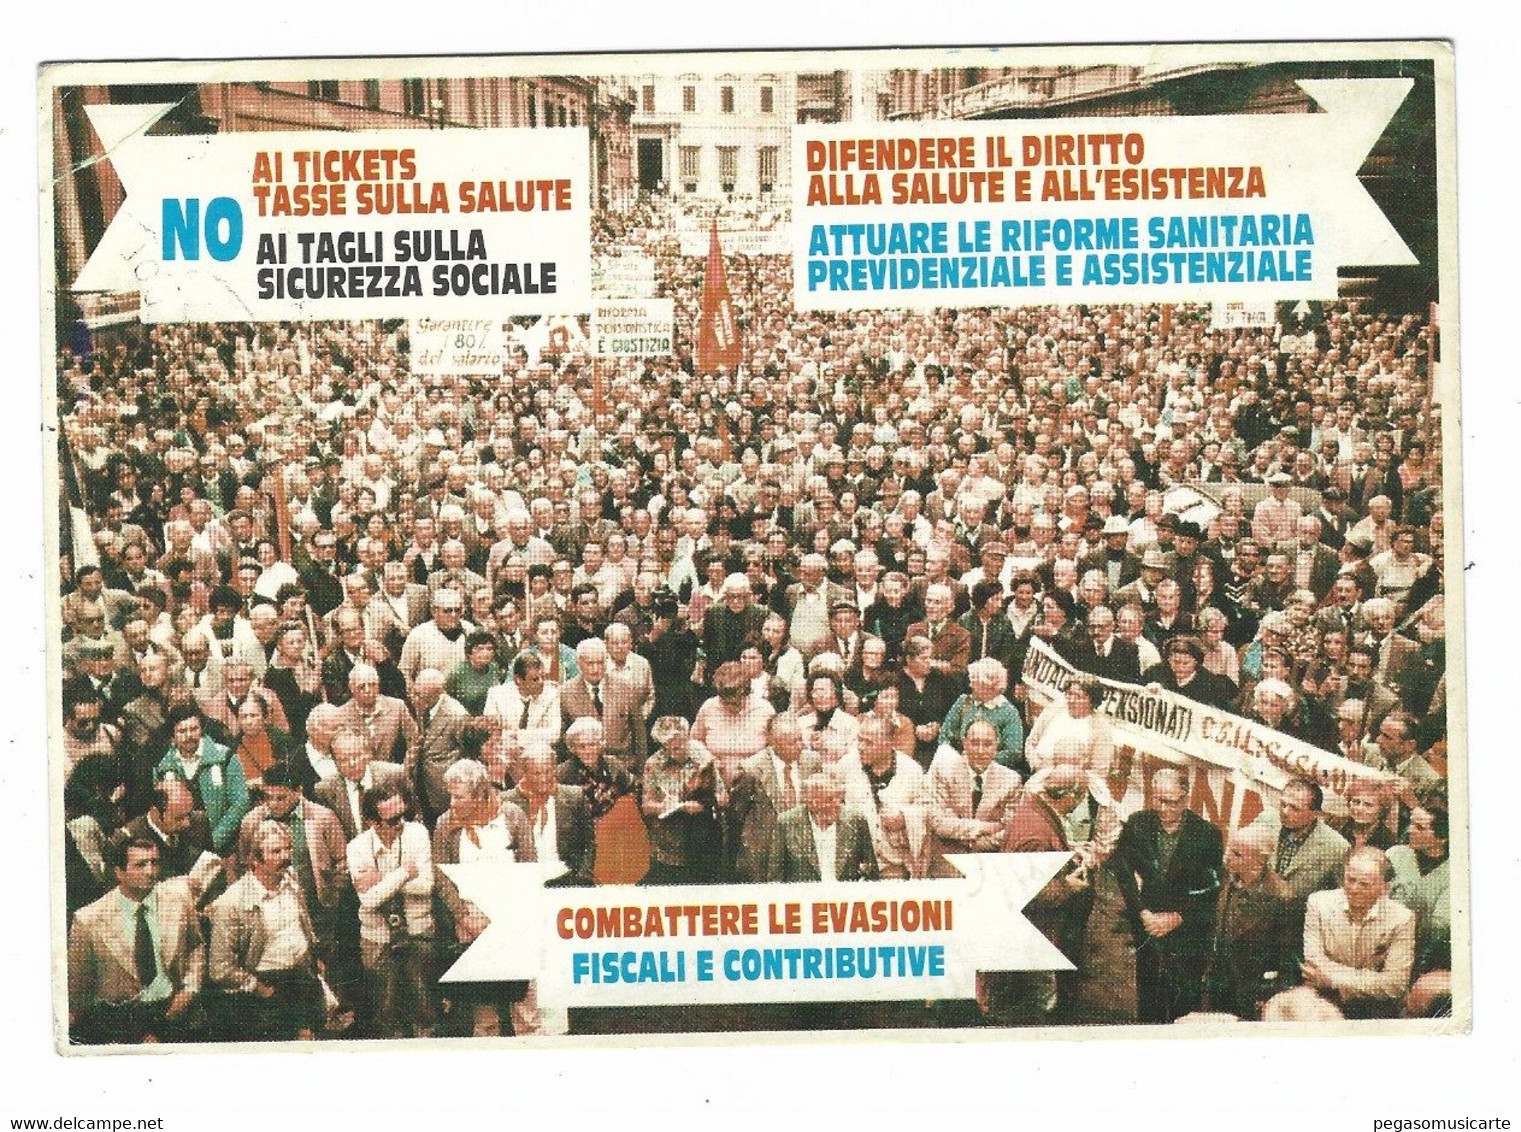 13952 CLC - CGIL - CISL - UIL PENSIONATI 1981 EMILIA ROMAGNA MANIFESTAZIONE A ROMA - Labor Unions